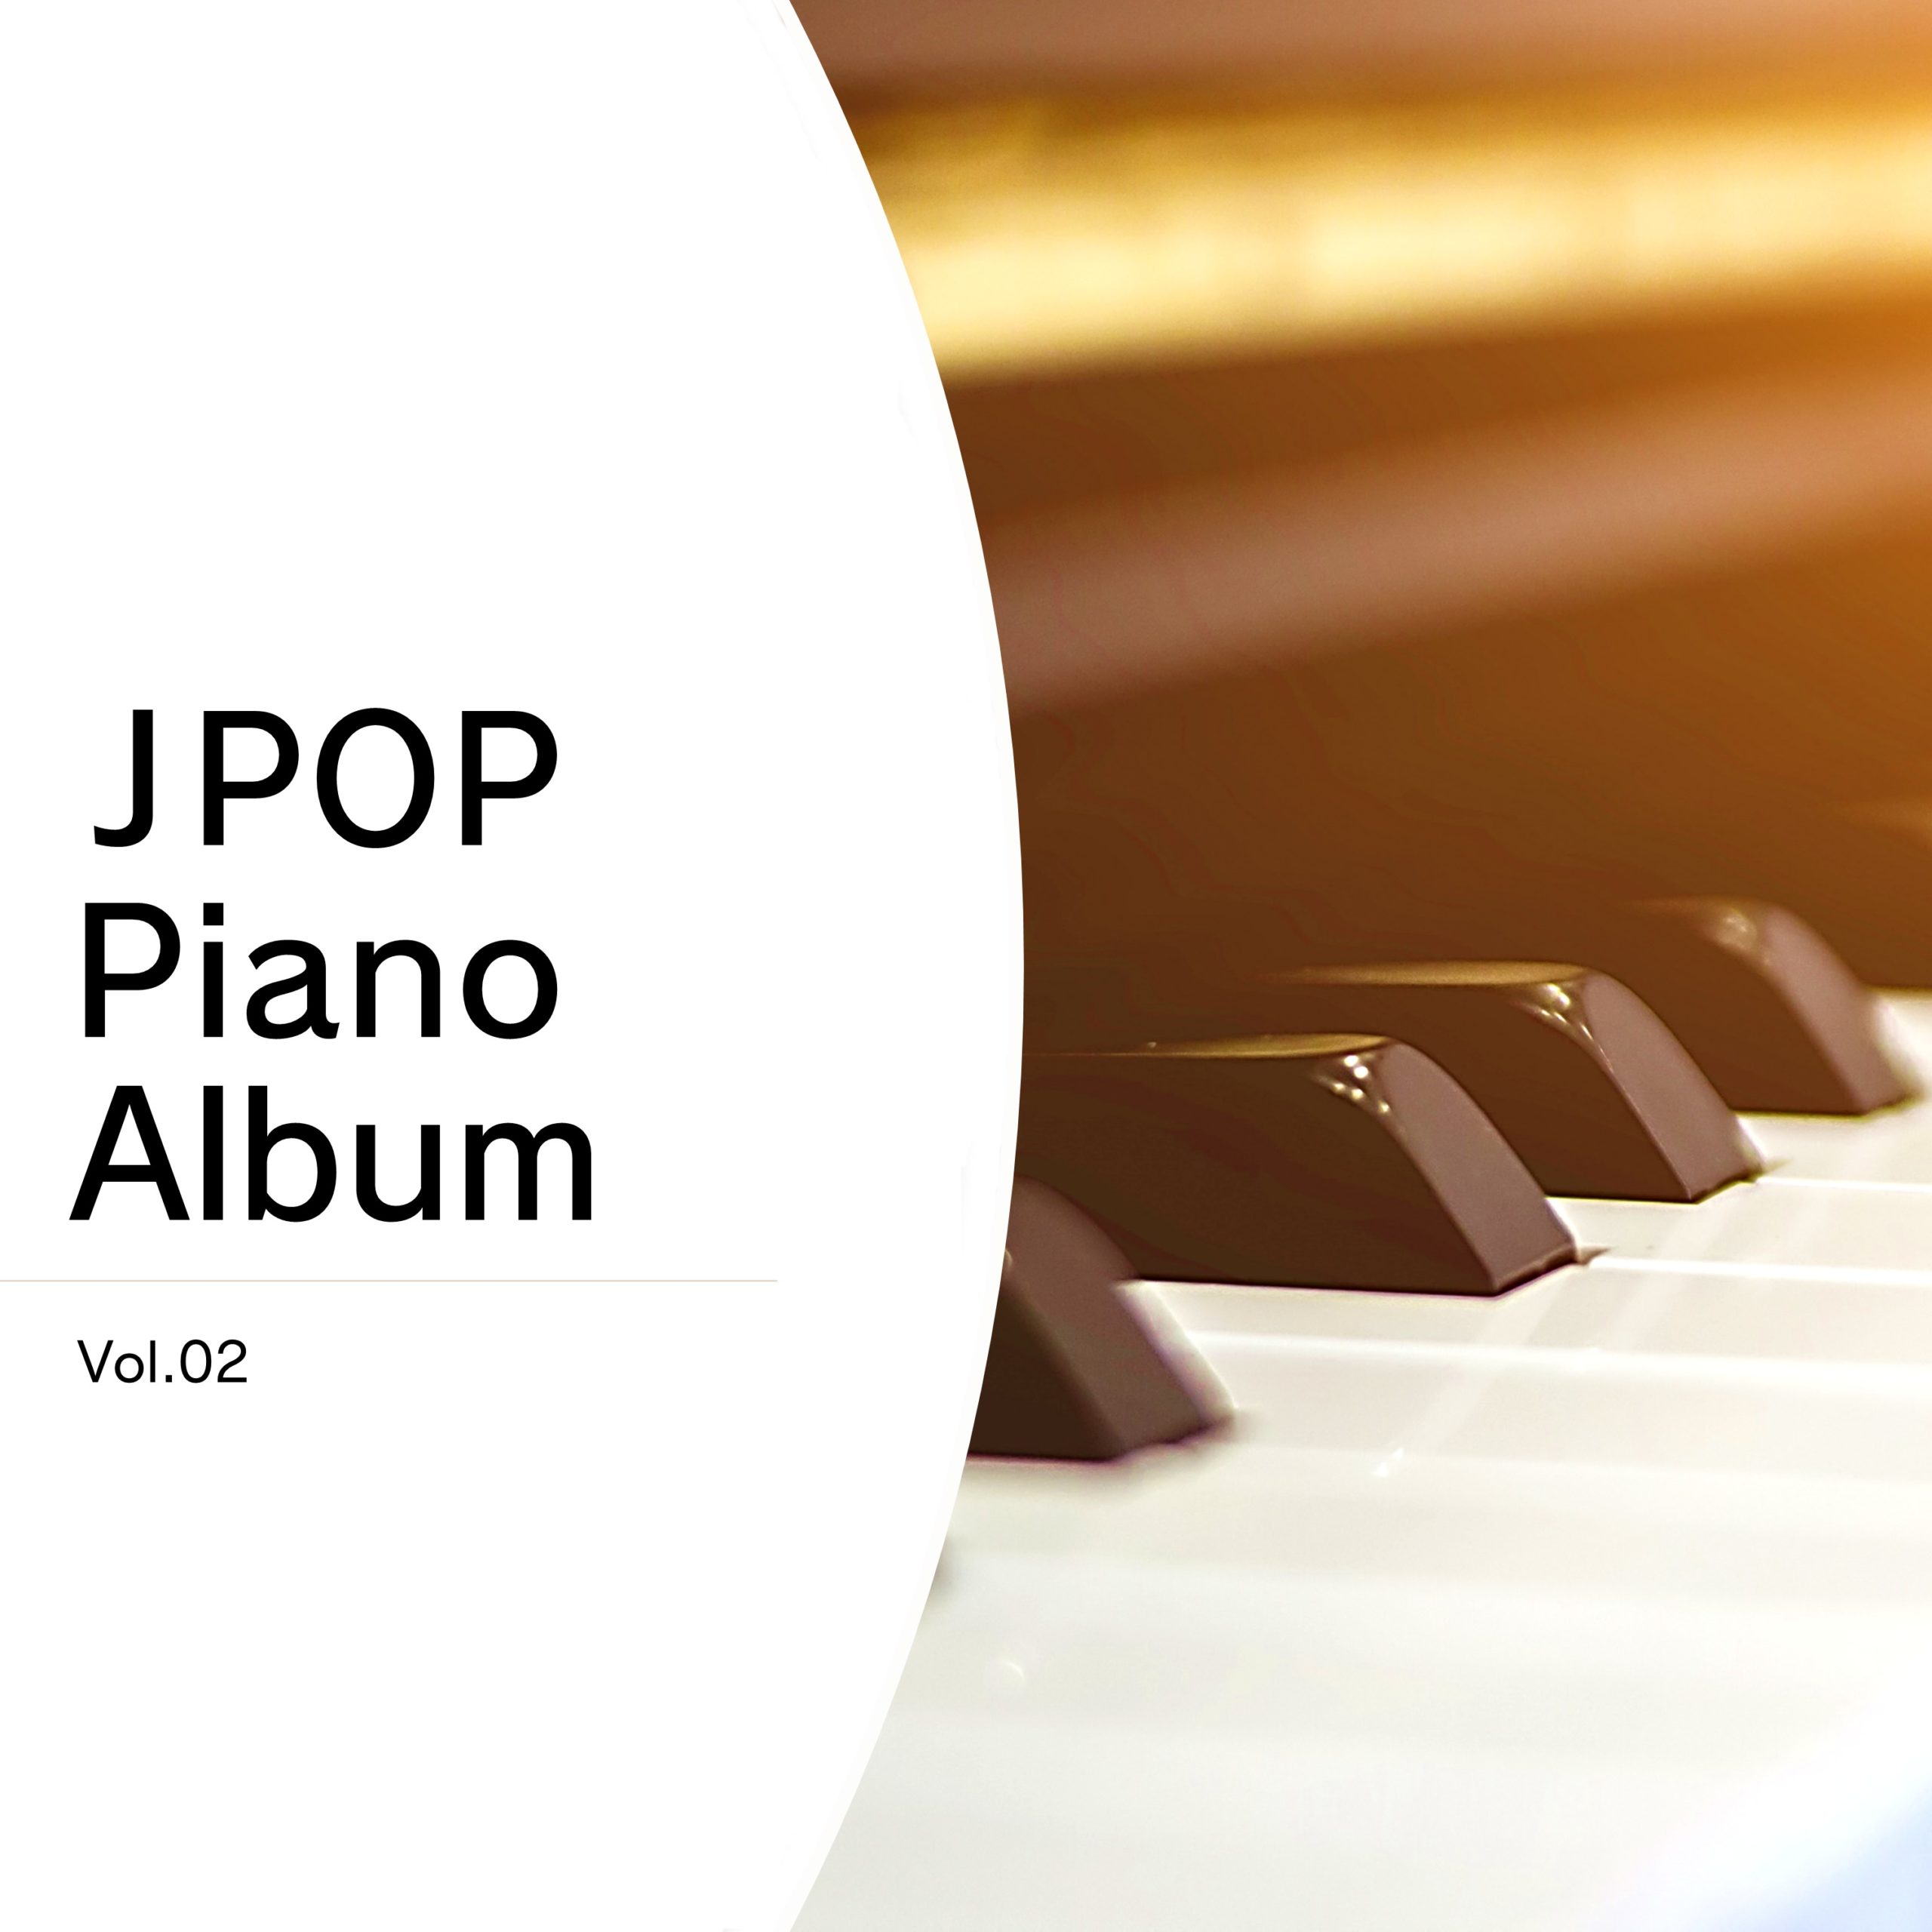 JPOP Piano Album Vol.02